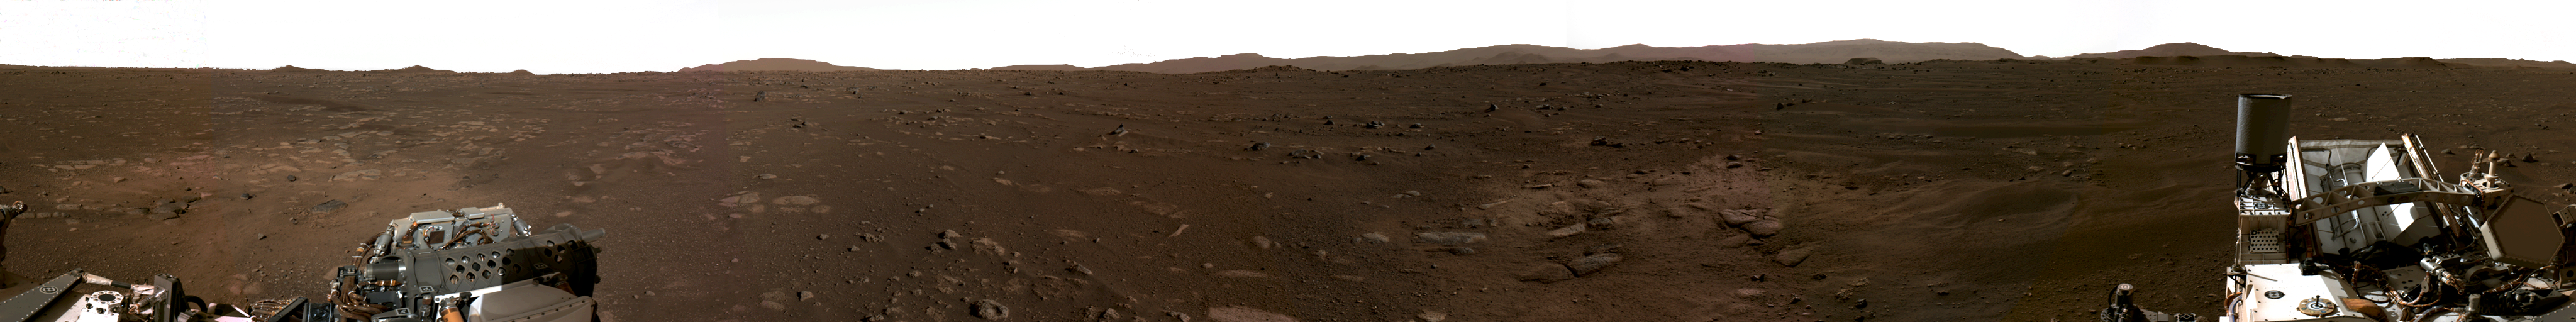 Mars 2020 Perseverance landing spot in Jezero Crater